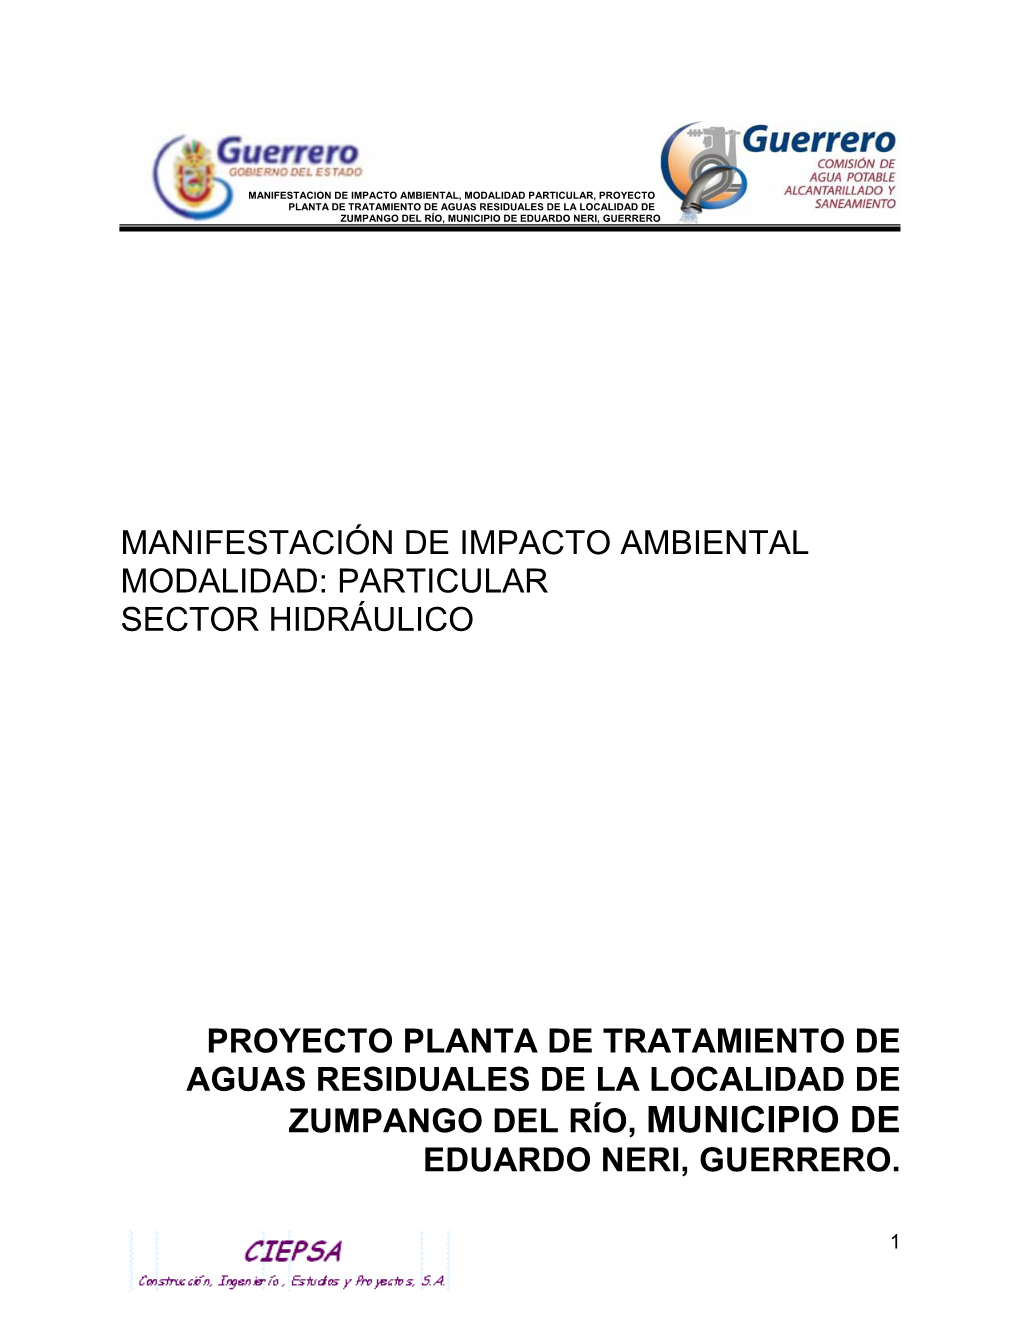 Planta De Tratamiento De Aguas Residuales De La Localidad De Zumpango Del Río, Municipio De Eduardo Neri, Guerrero